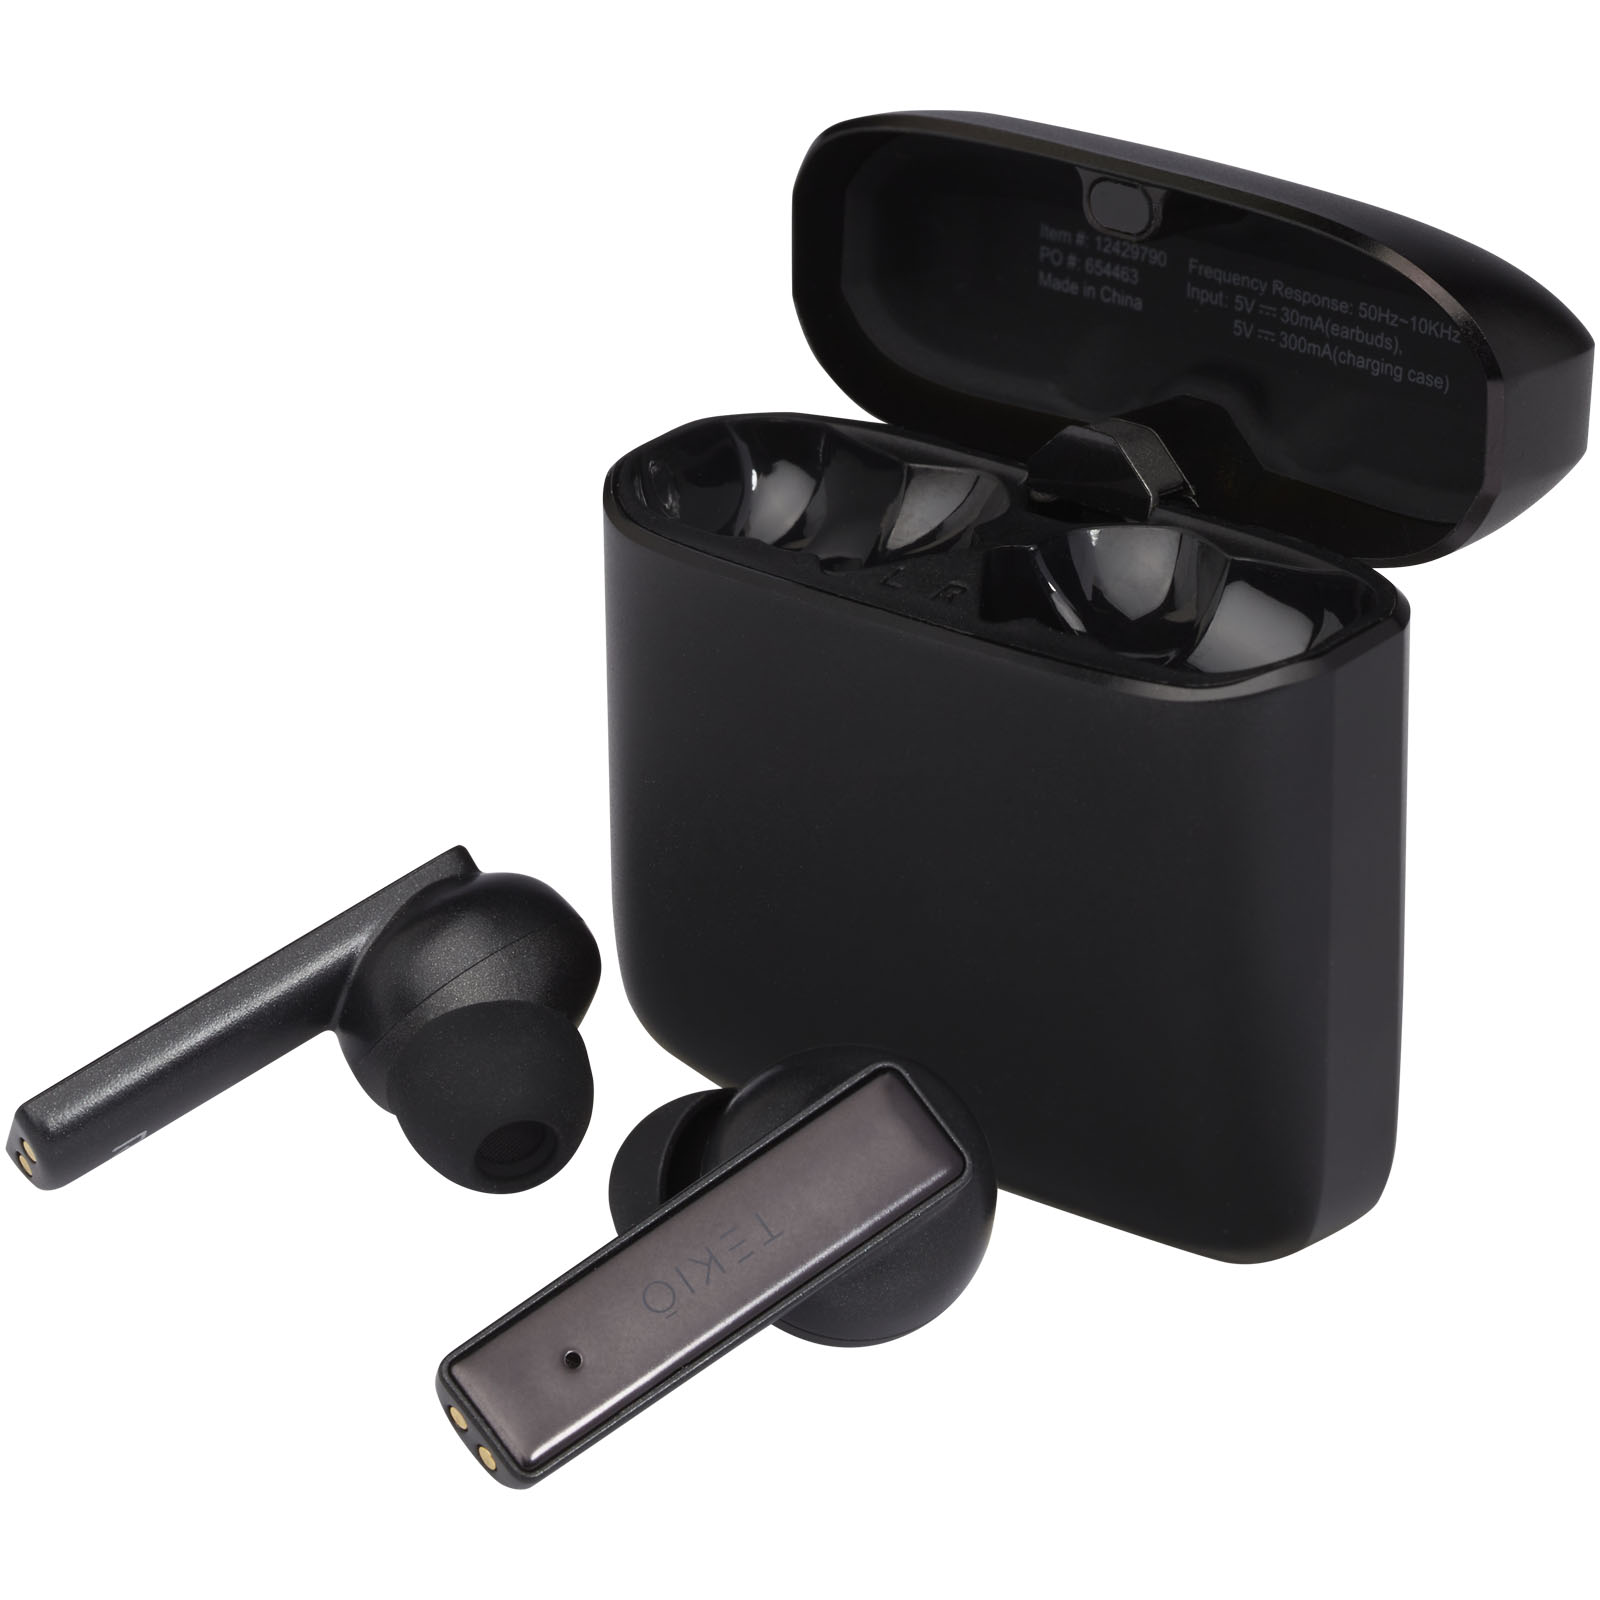 Earbuds - Hybrid premium True Wireless earbuds